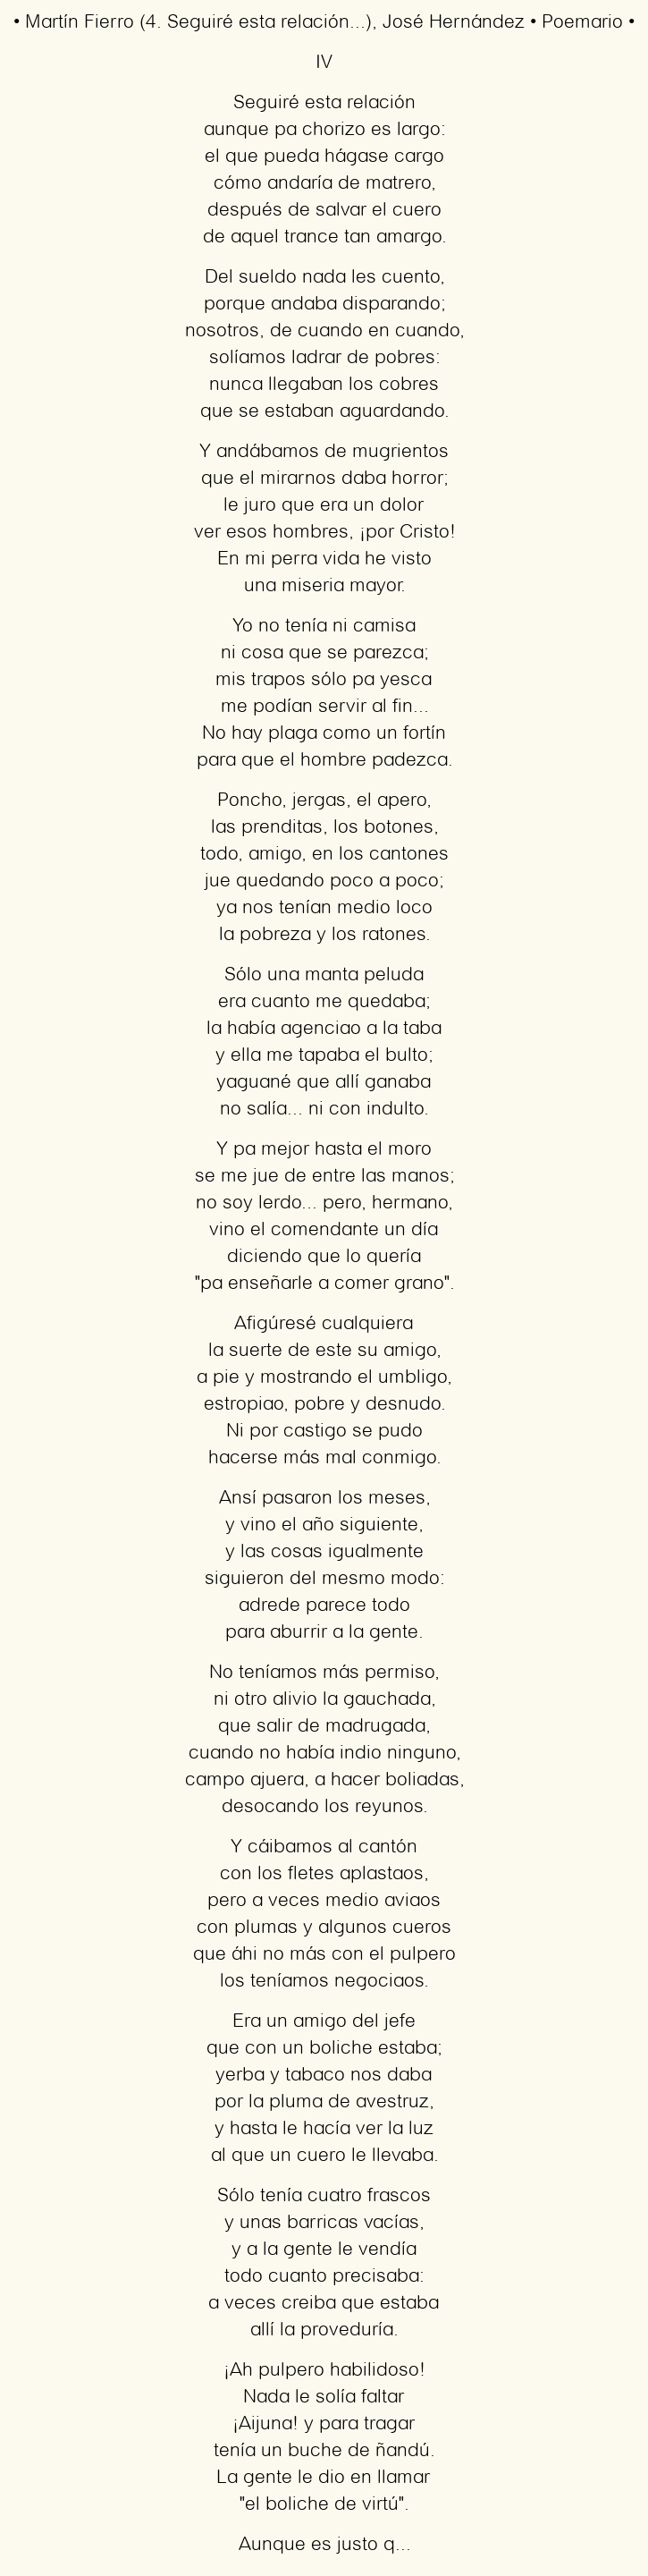 Imagen con el poema Martín Fierro (4. Seguiré esta relación…), por José Hernández